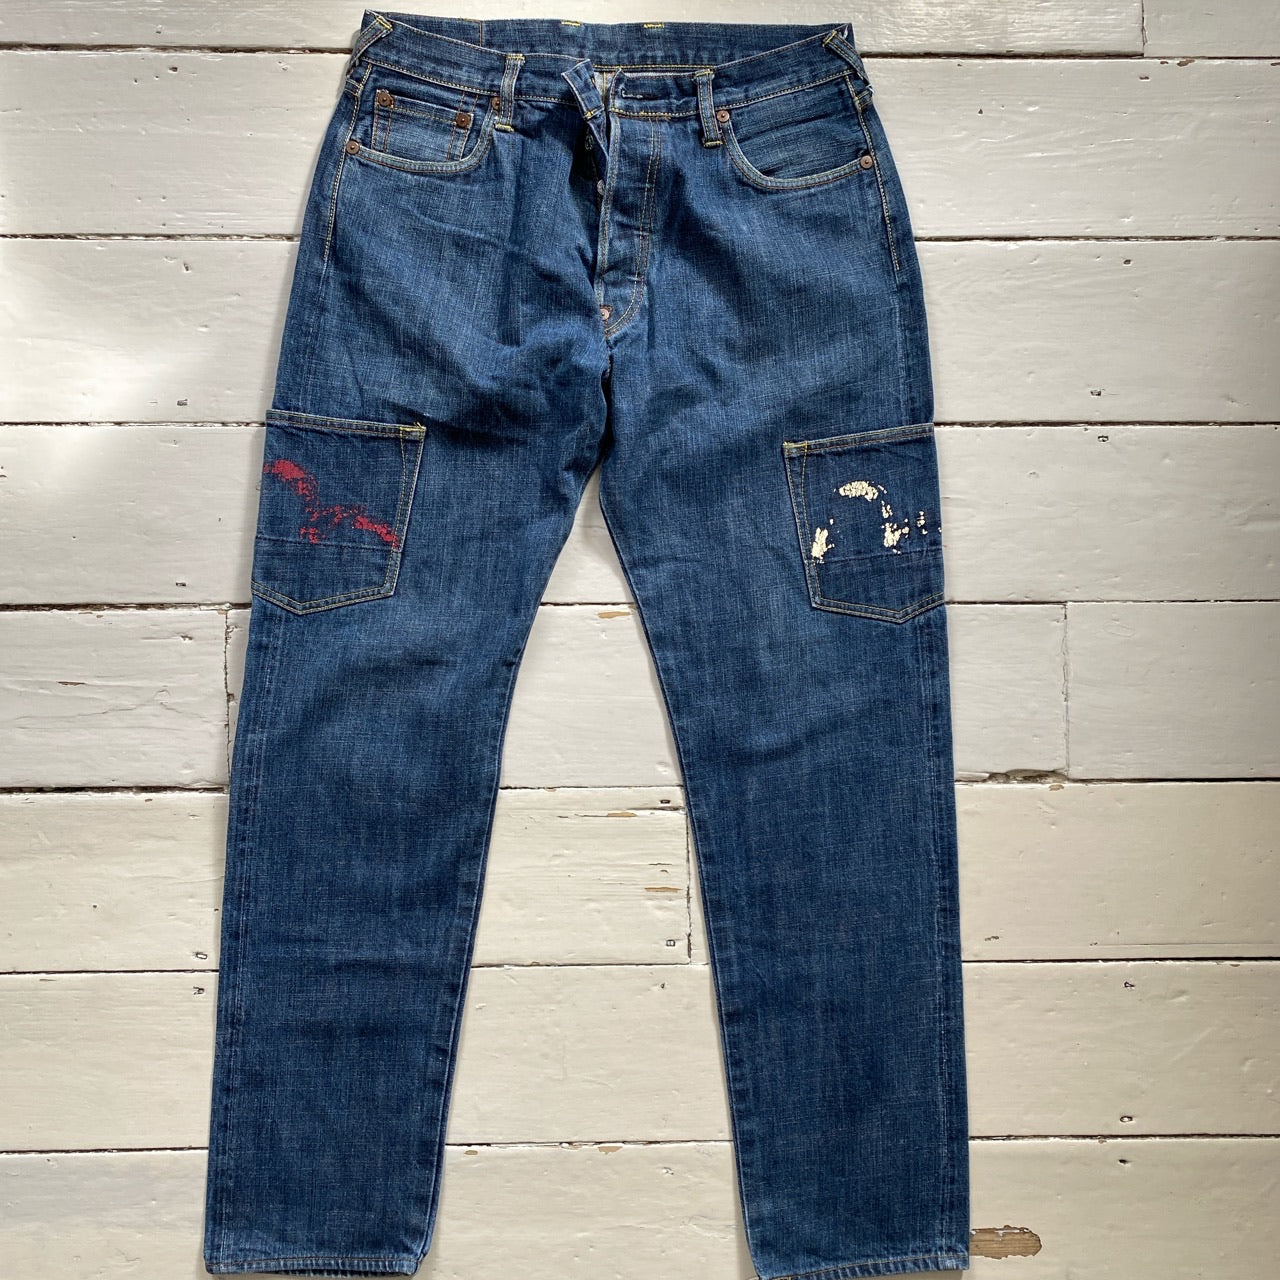 Evisu Vintage Daicock Jeans (34/33)